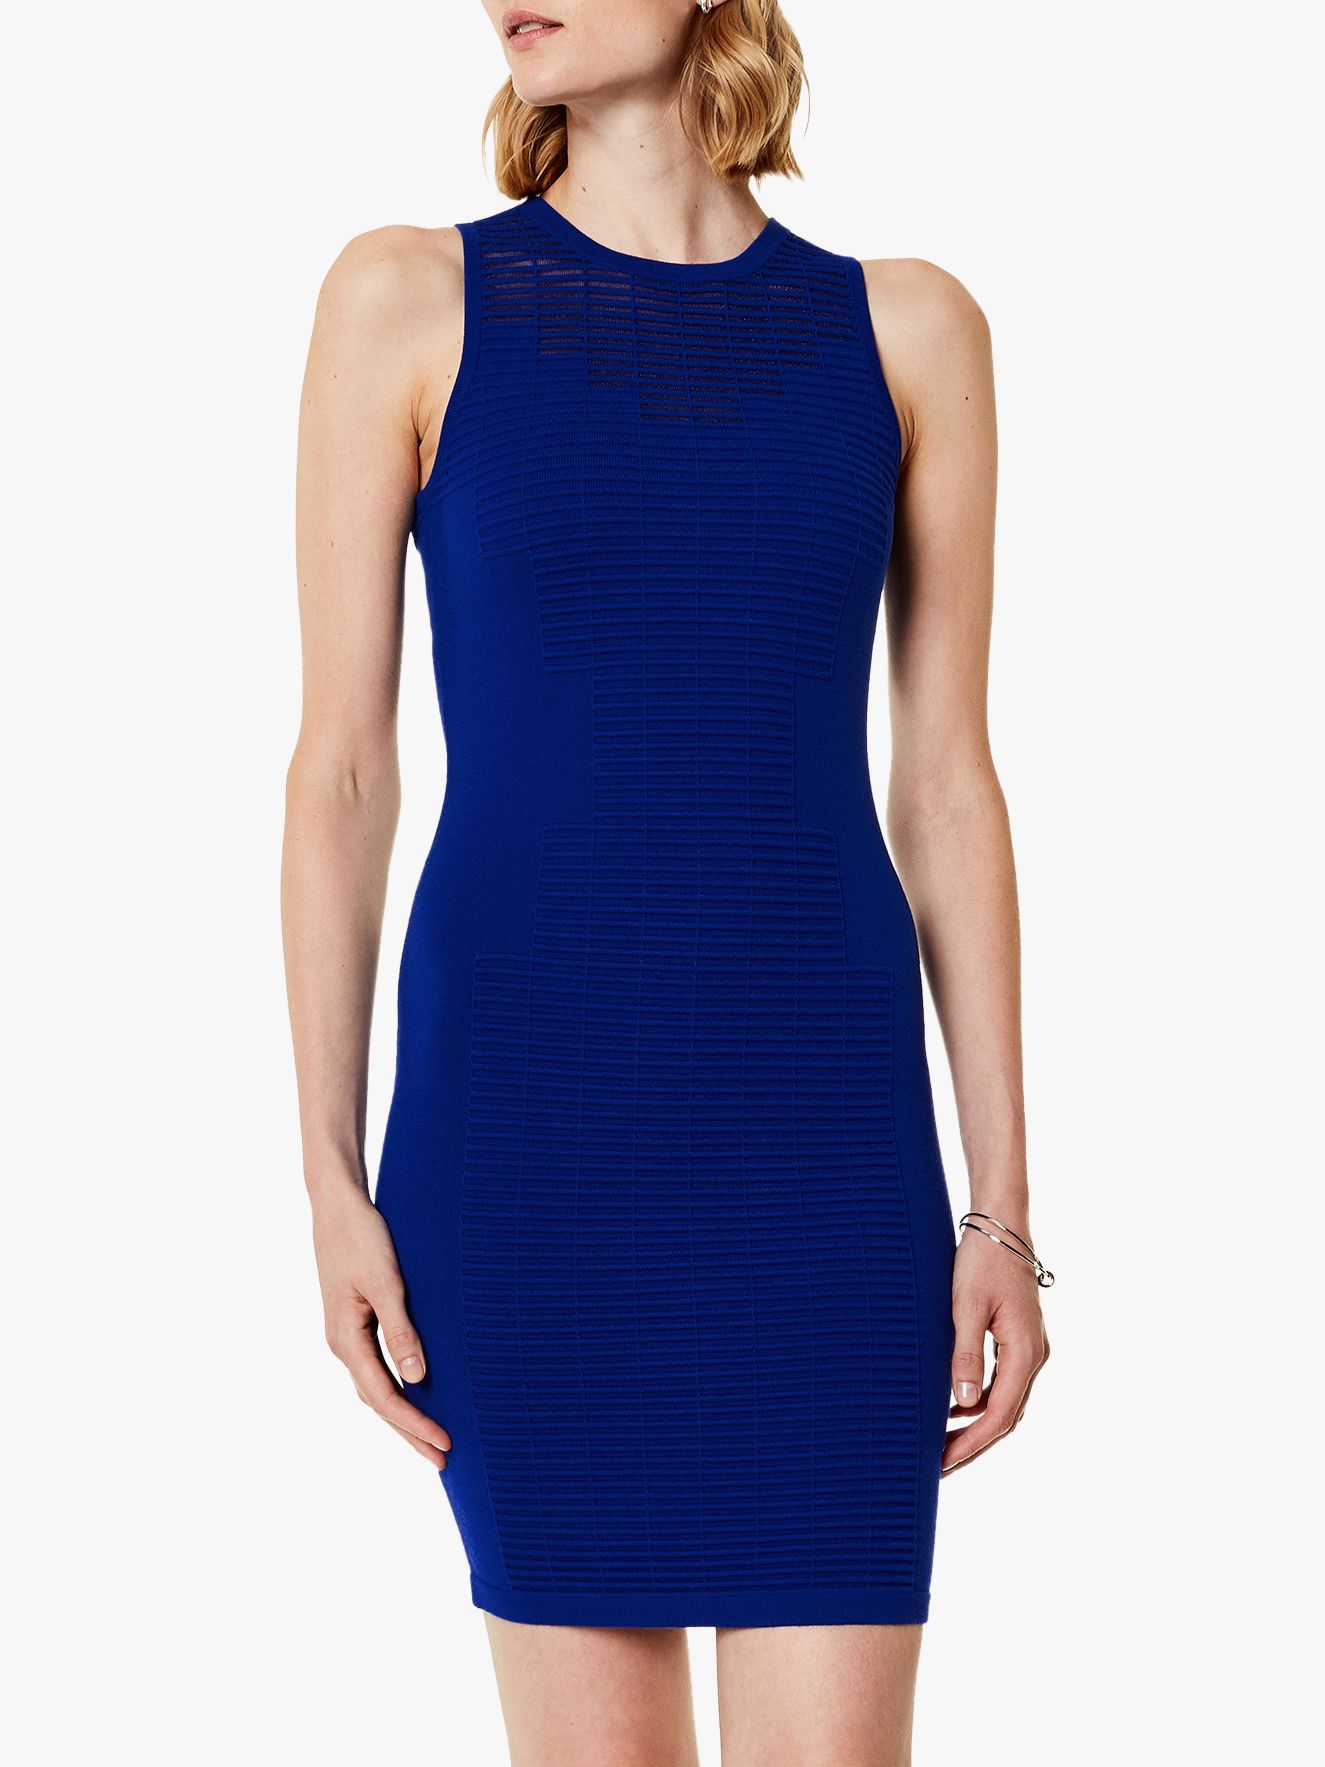 Karen Millen Knit Bodycon Dress, Blue 